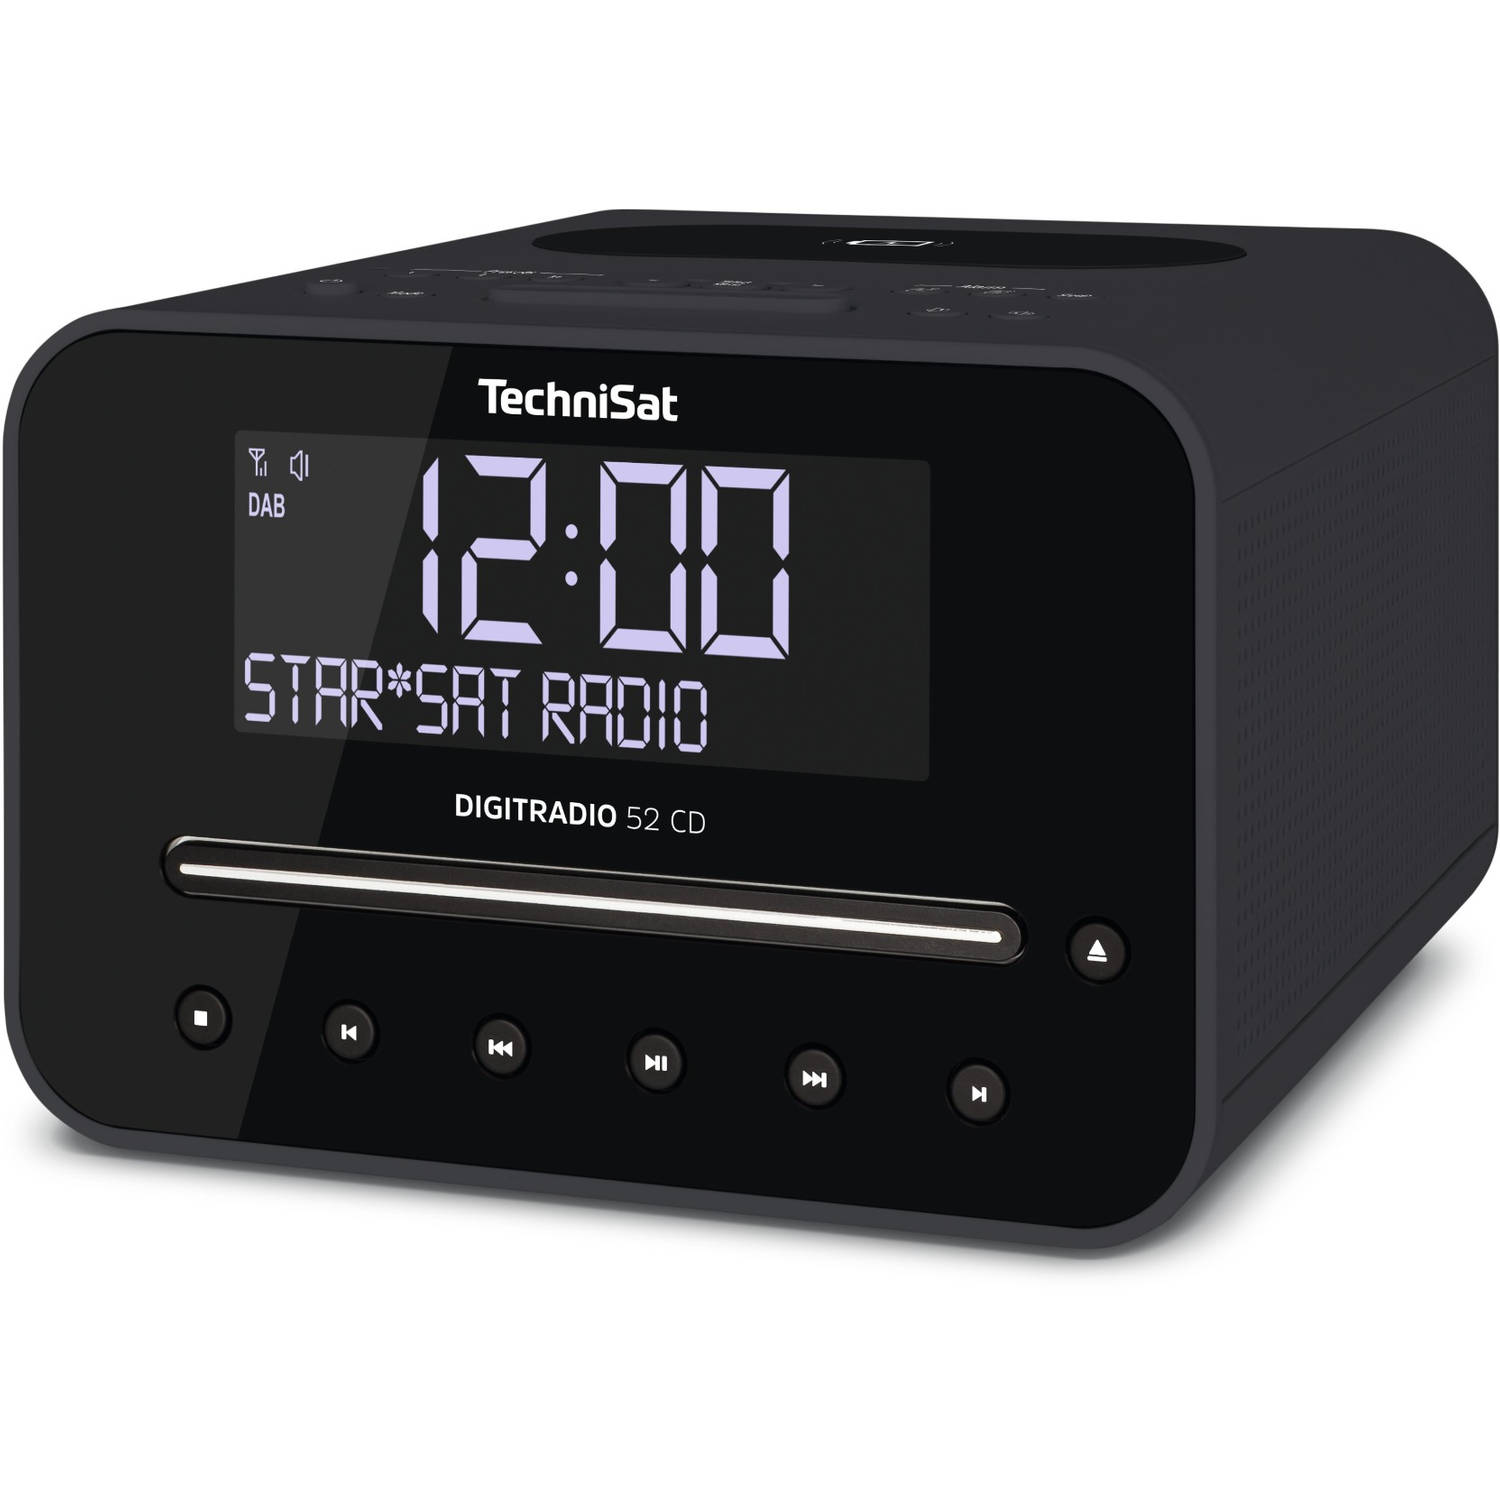 Verdorde bijzonder Heup Technisat Digitradio 52 CD - DAB+ wekkerradio met CD - antraciet | Blokker